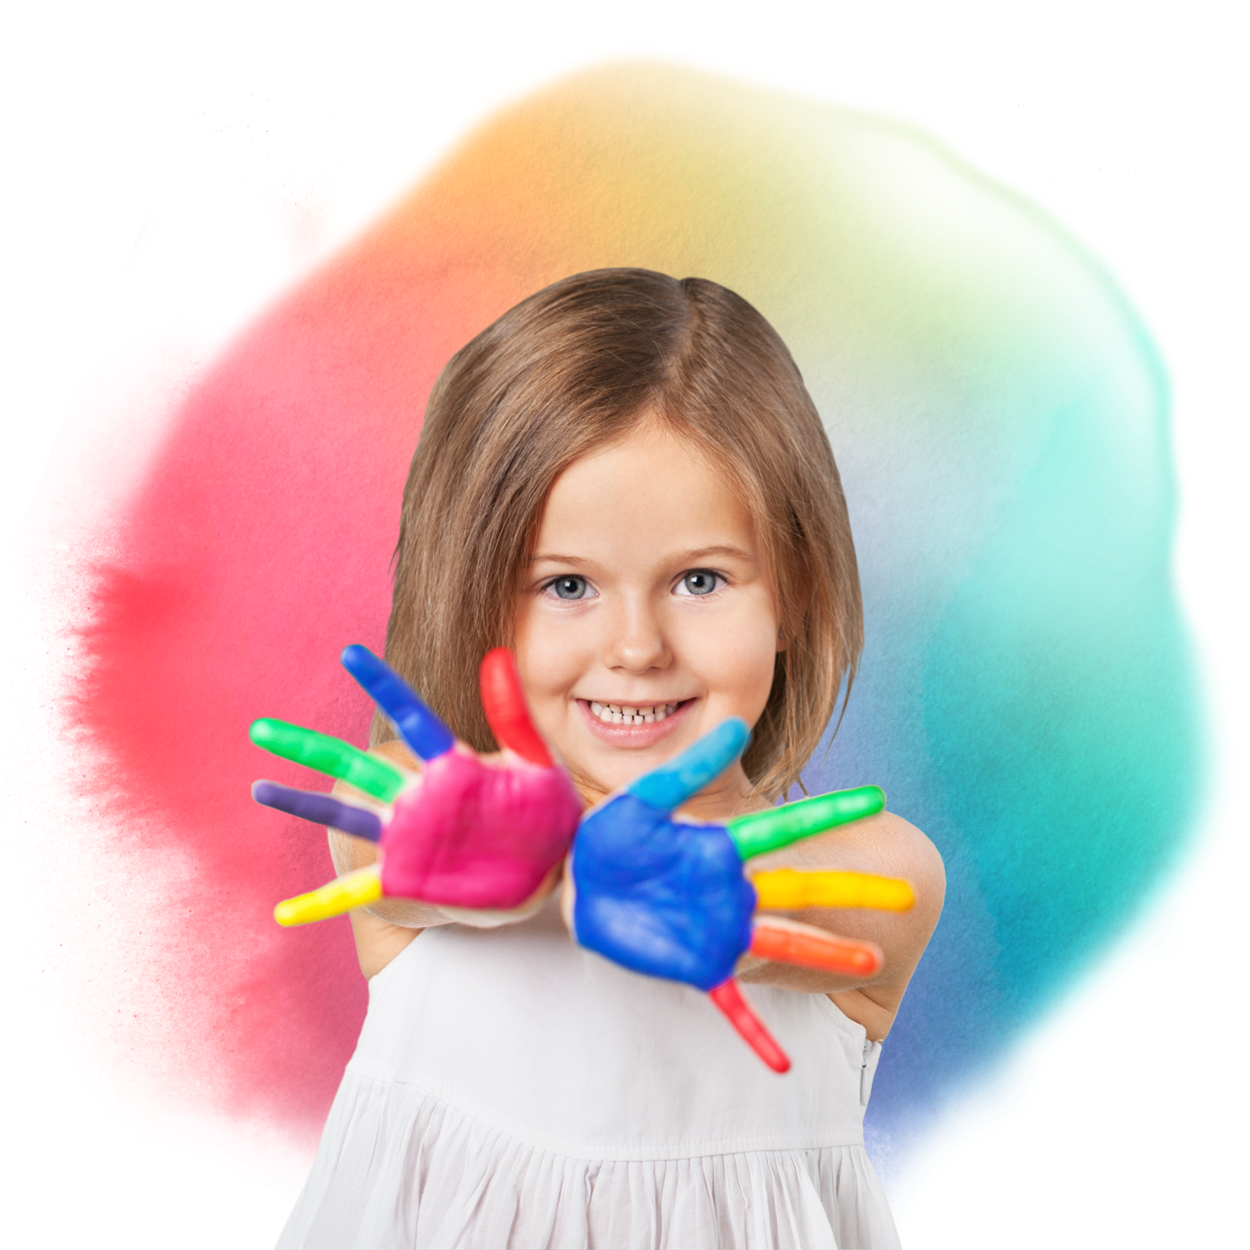 Cómo pintar con Pintura dedos Tcolors: ¡Colores y Diversión Creativa!